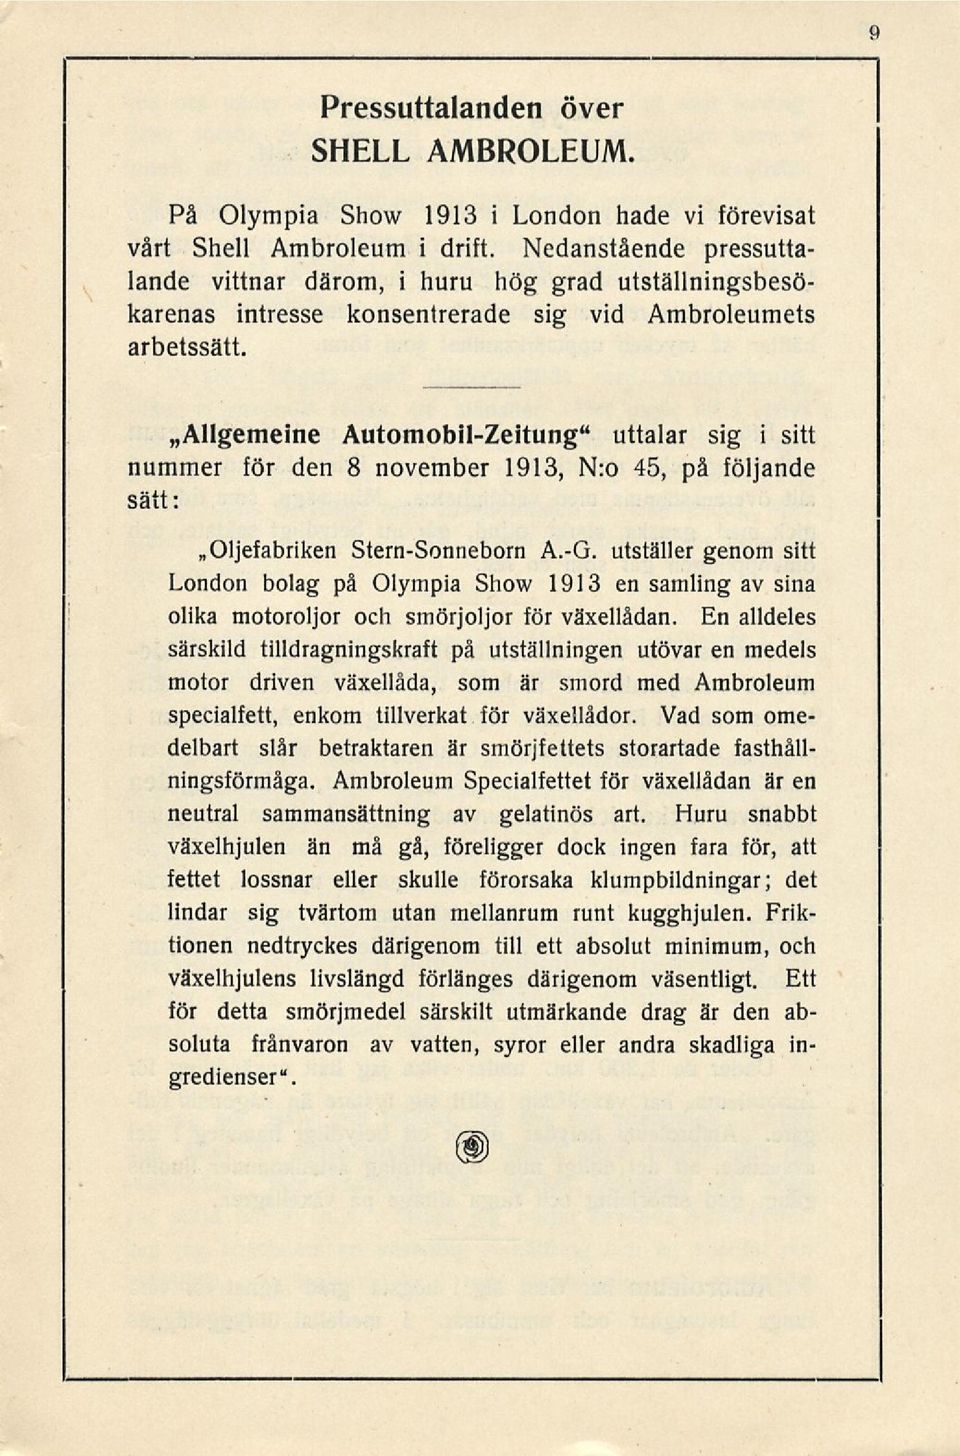 »allgemeine Automobil-Zeitung" uttalar sig i sitt nummer för den 8 november 1913, N:o 45, på följande sätt: Oljefabriken Stern-Sonneborn A.-G.